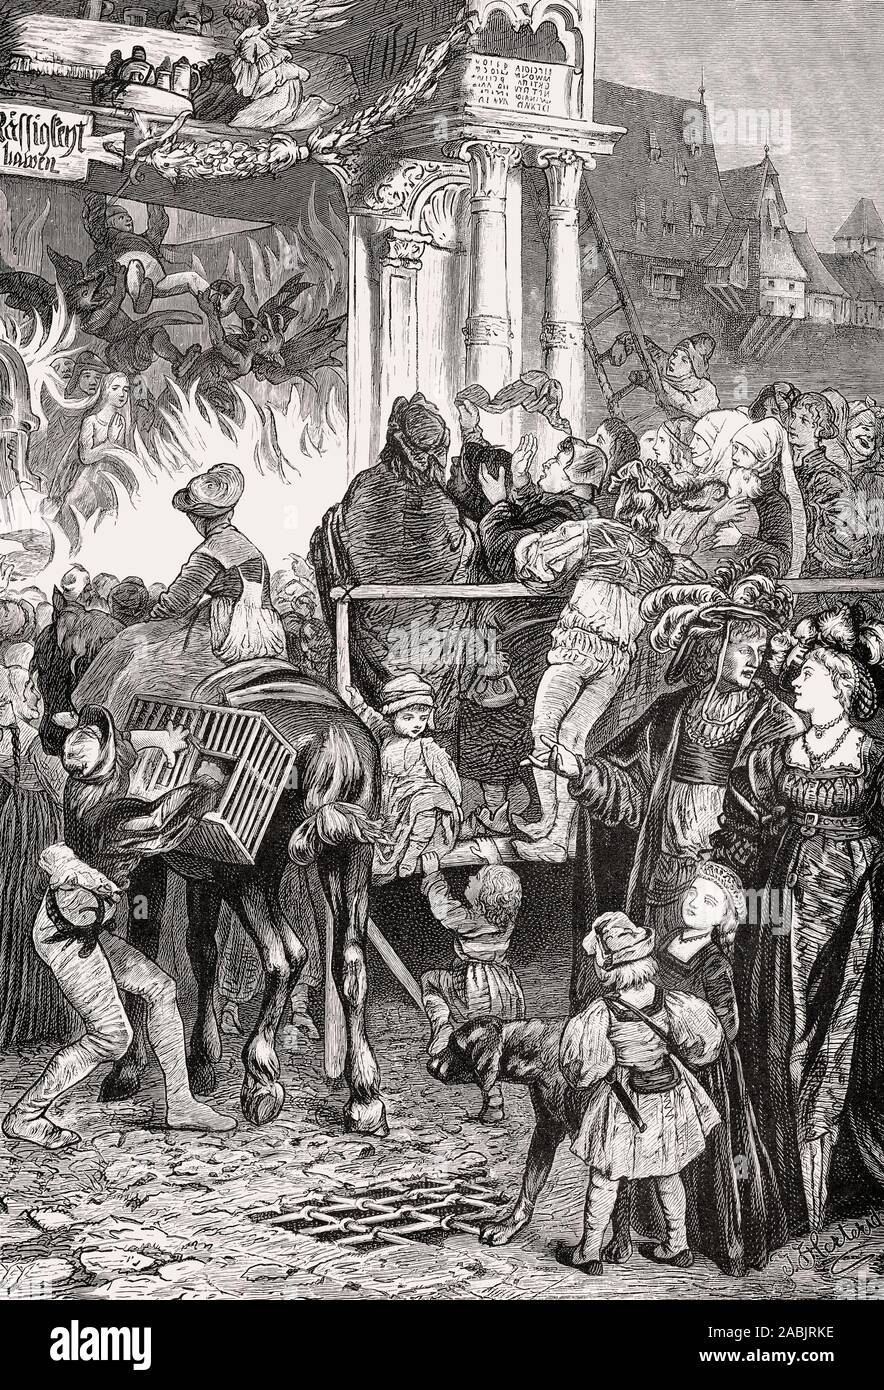 Un mystère médiéval, Allemagne, Europe, 16e siècle Banque D'Images